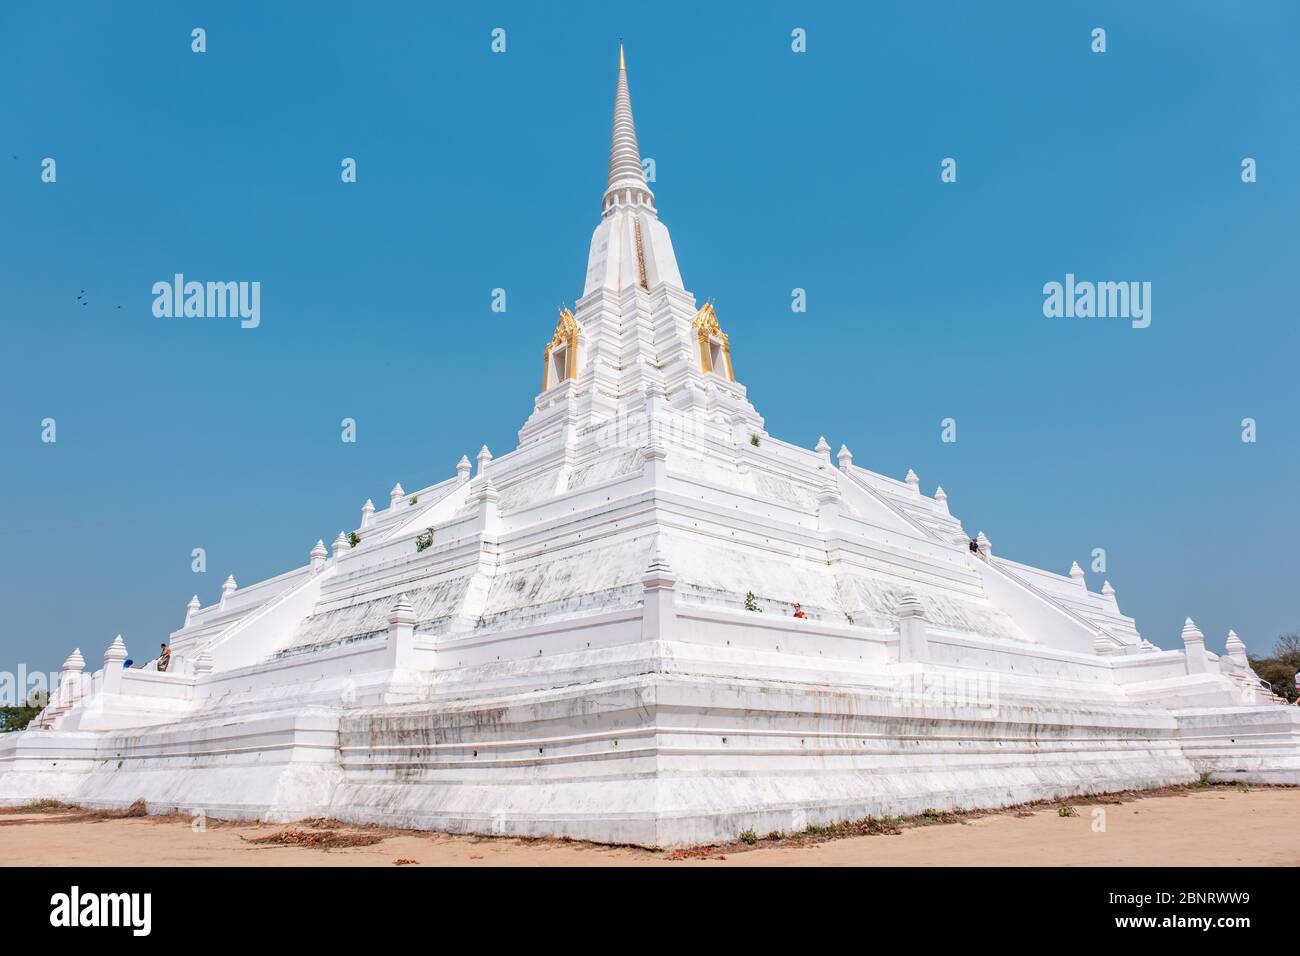 Ayutthaya, Bangkok / Thailand - 9. Februar 2020: Name dieses Ortes 'Wat Phu Khao Thong Tempel' der Tempel ist weiß und befindet sich in der Provinz Ayutthaya Stockfoto